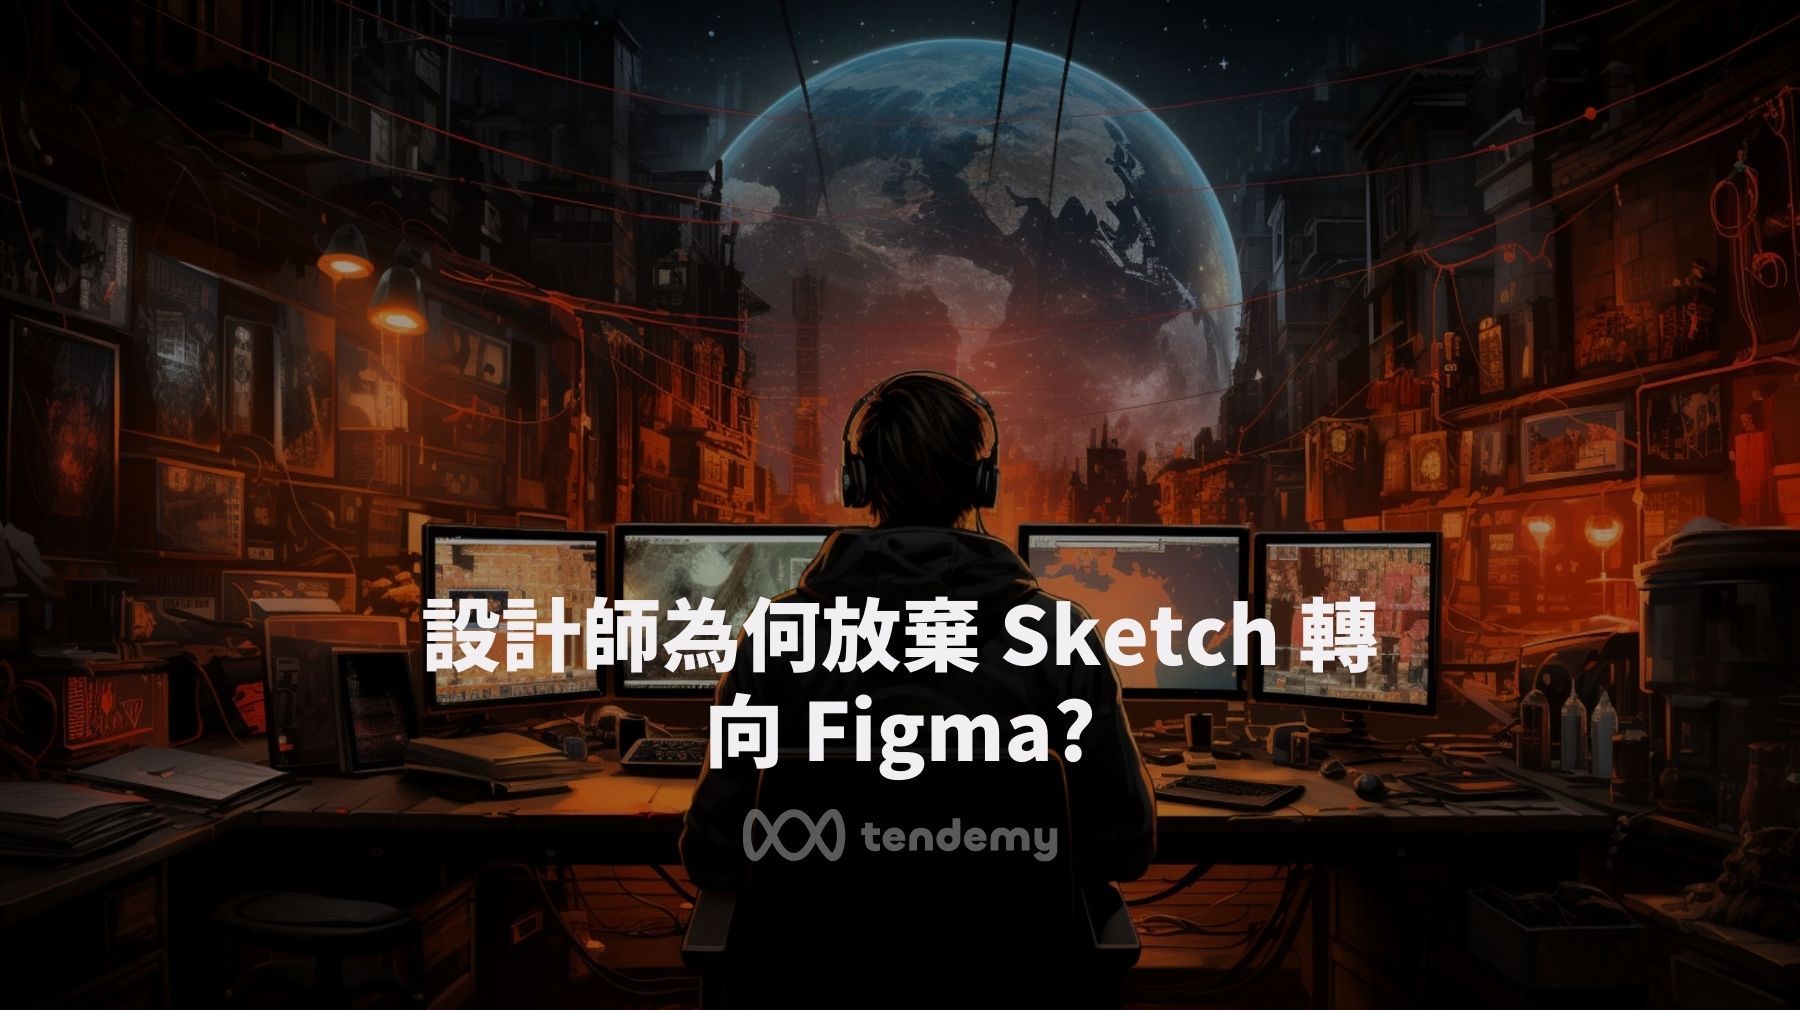 設計師為何放棄 Sketch 轉向 Figma?